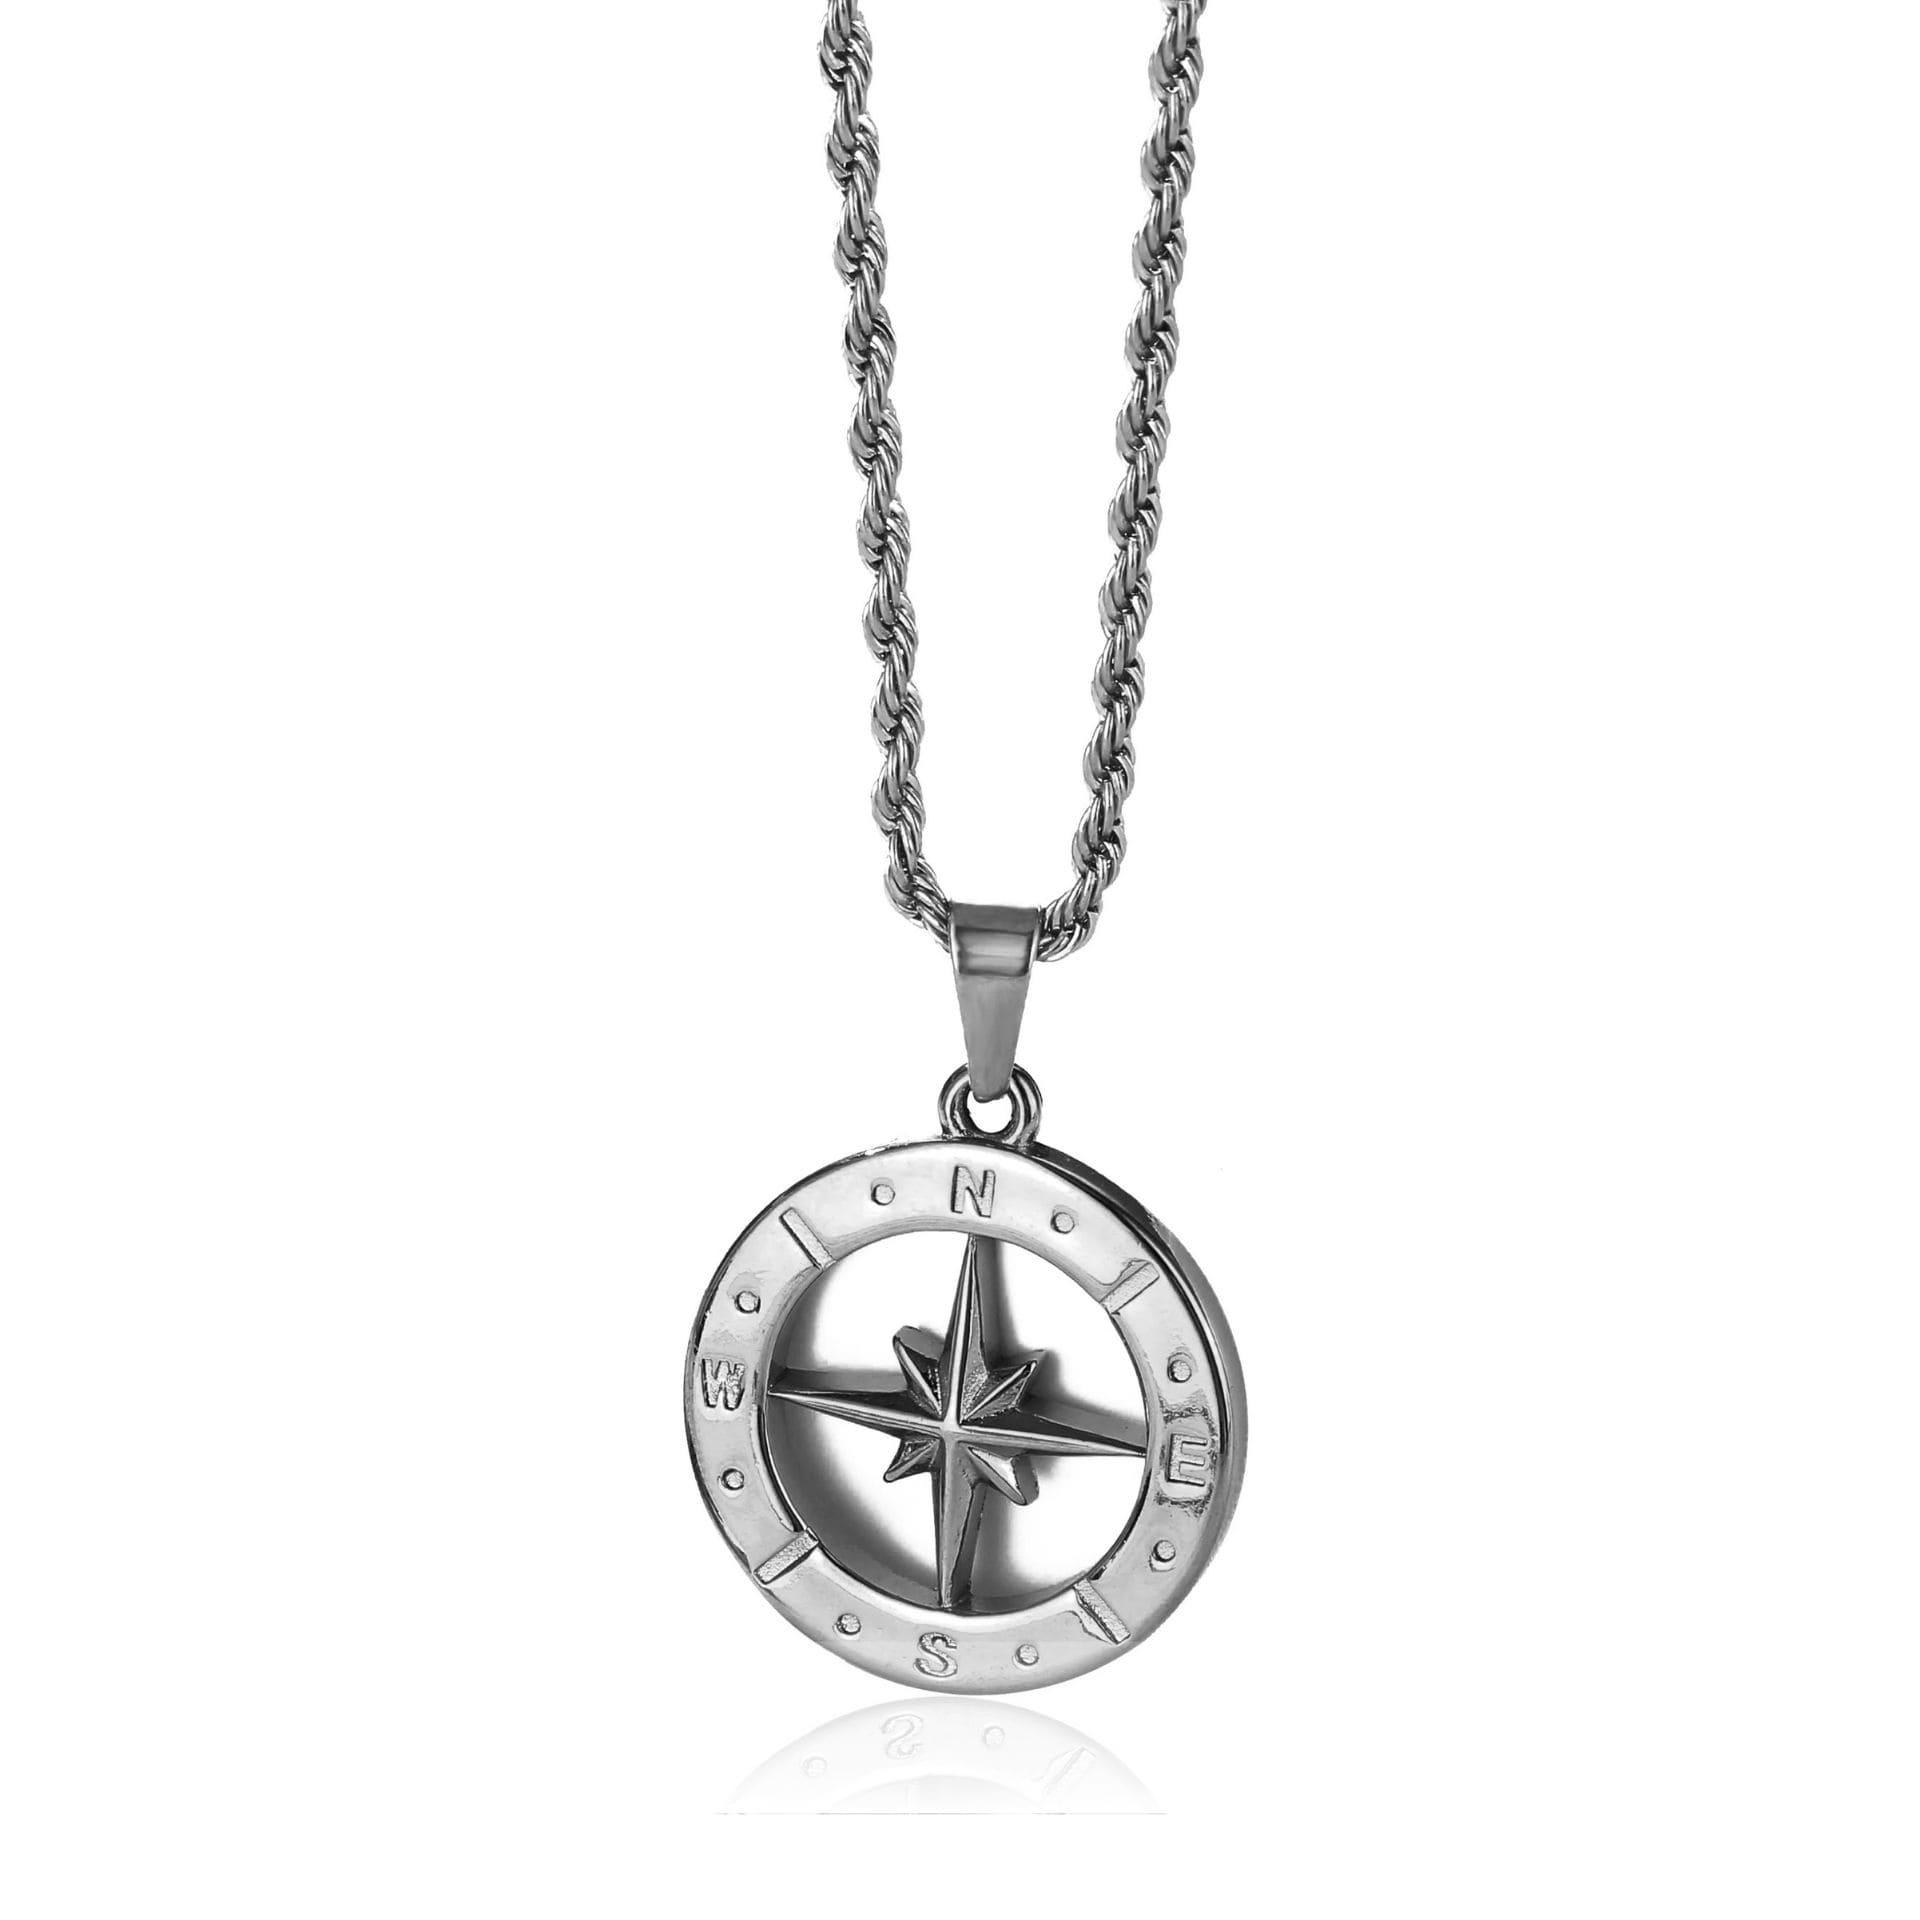 Stern Kompass Kette Silber